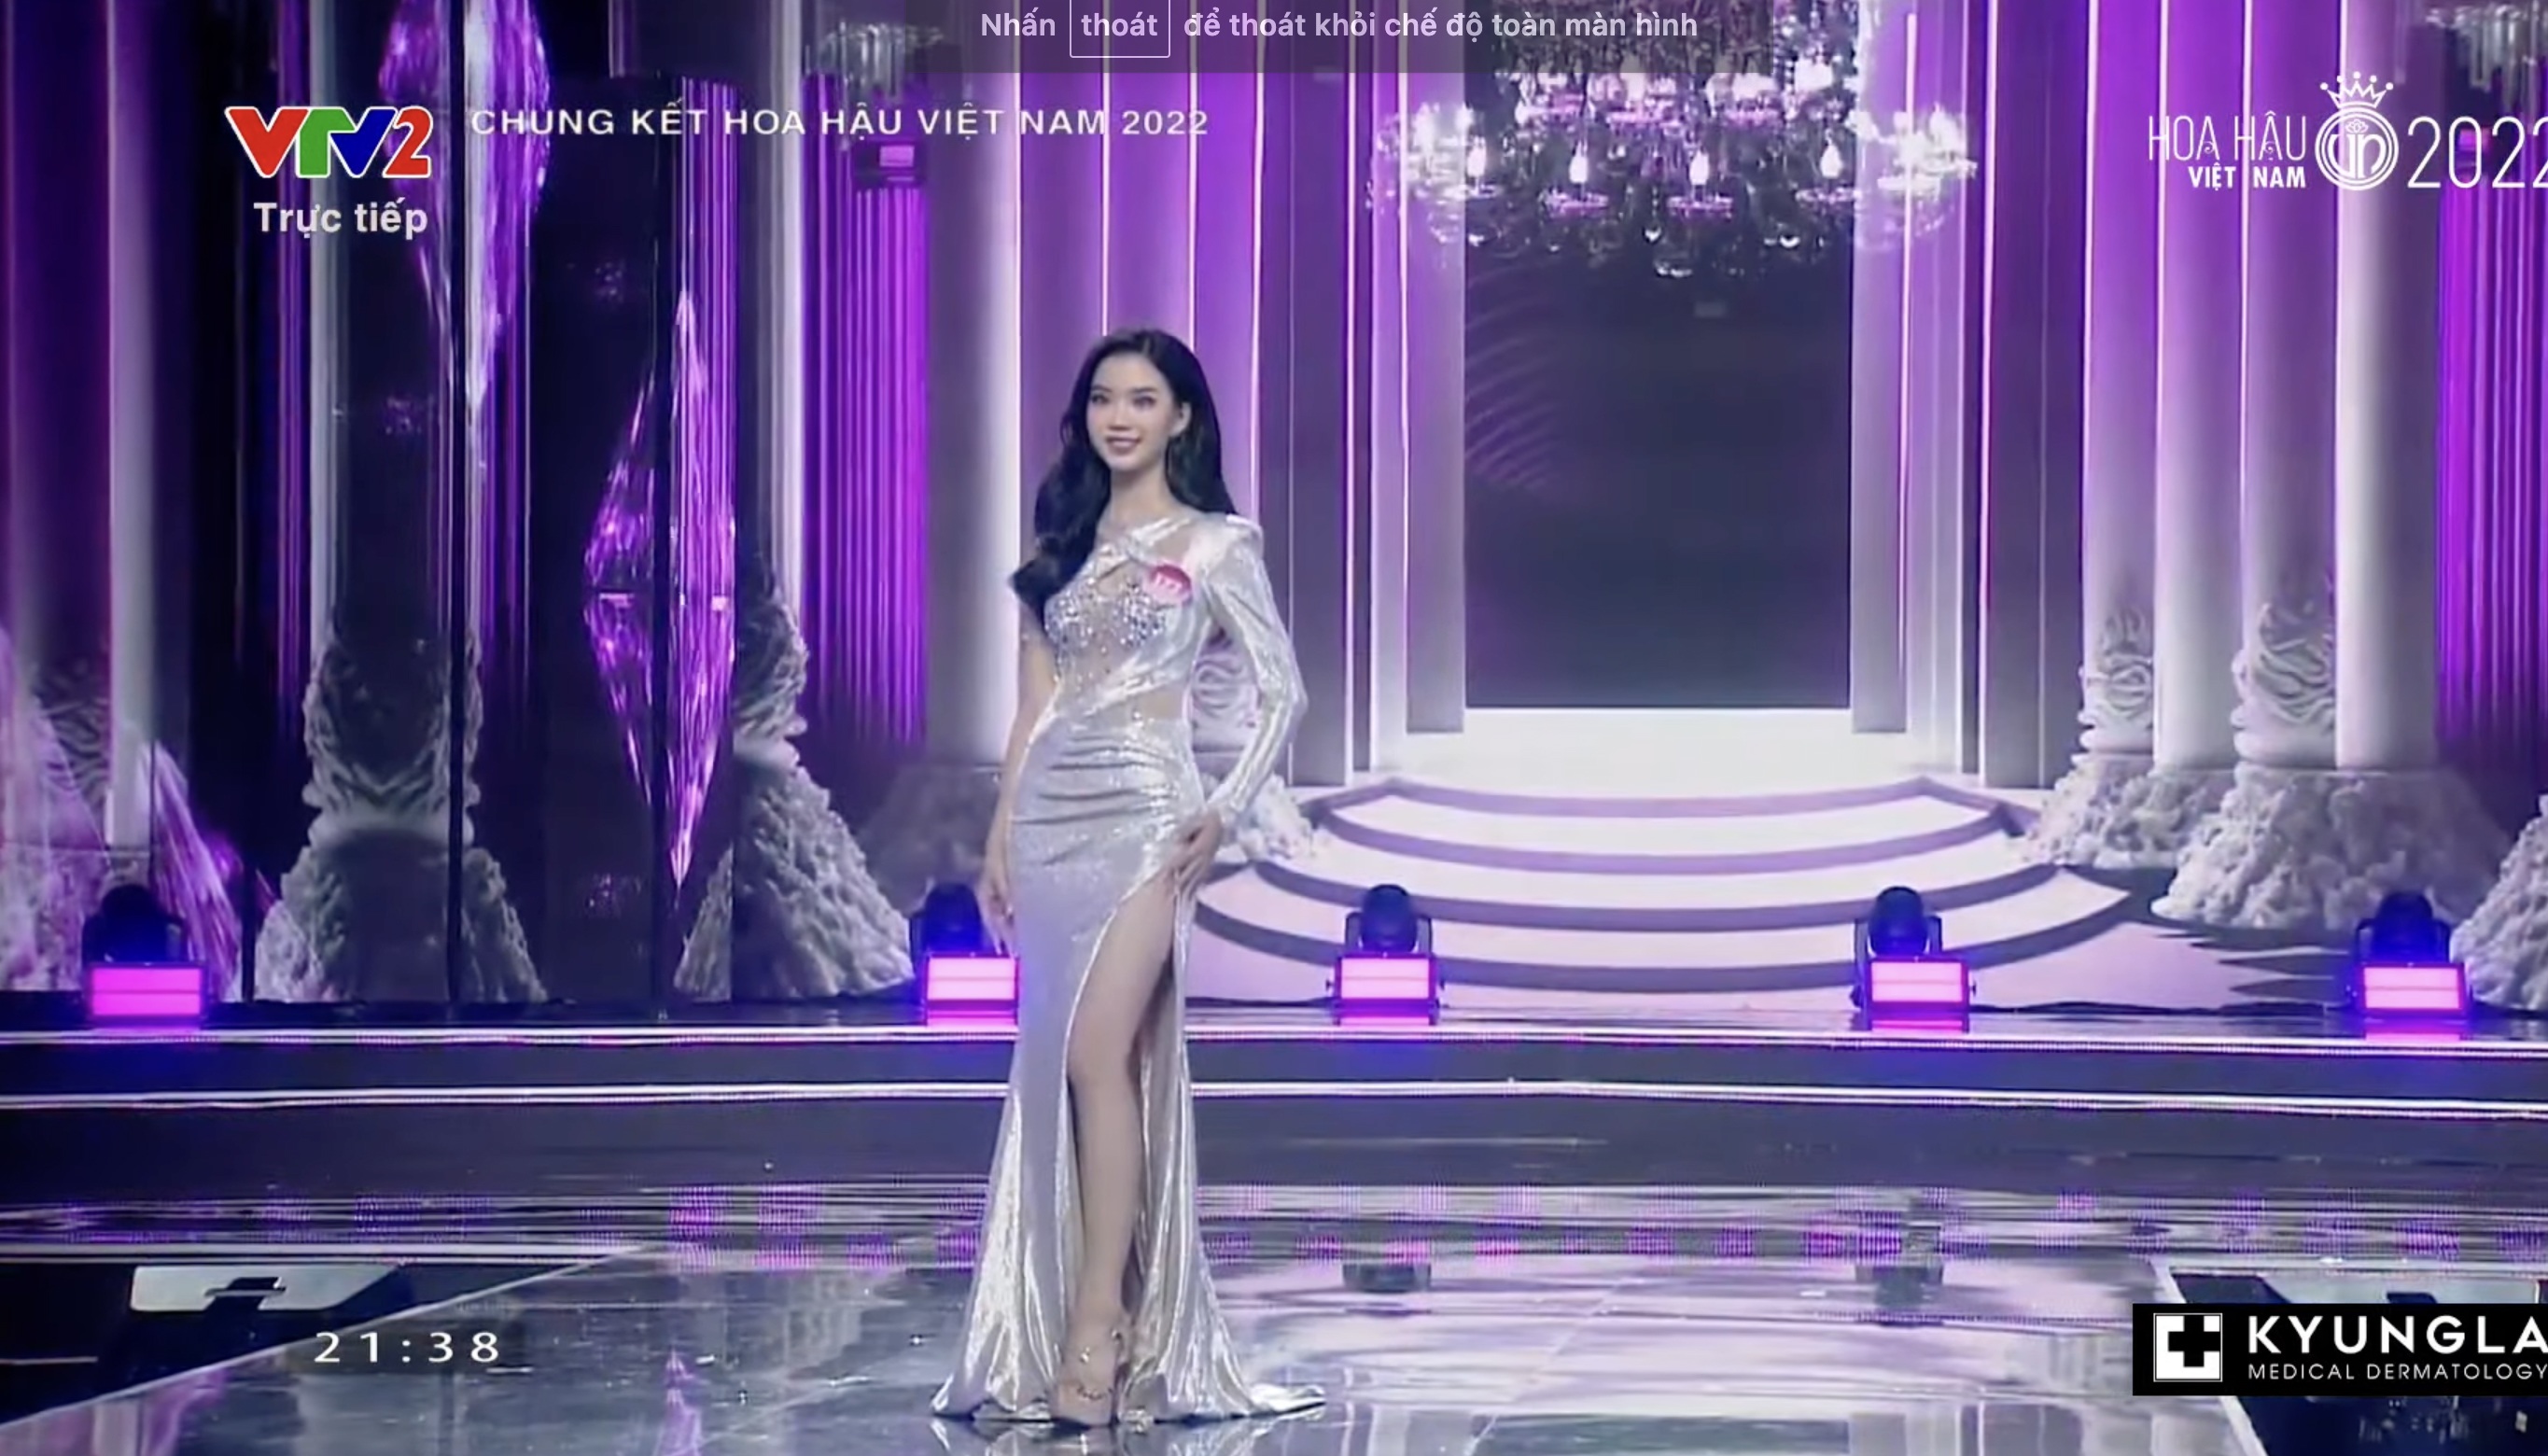 Chung kết Hoa hậu Việt Nam 2022: Tân Hoa hậu chính thức gọi tên Huỳnh Thị Thanh Thuỷ - 28